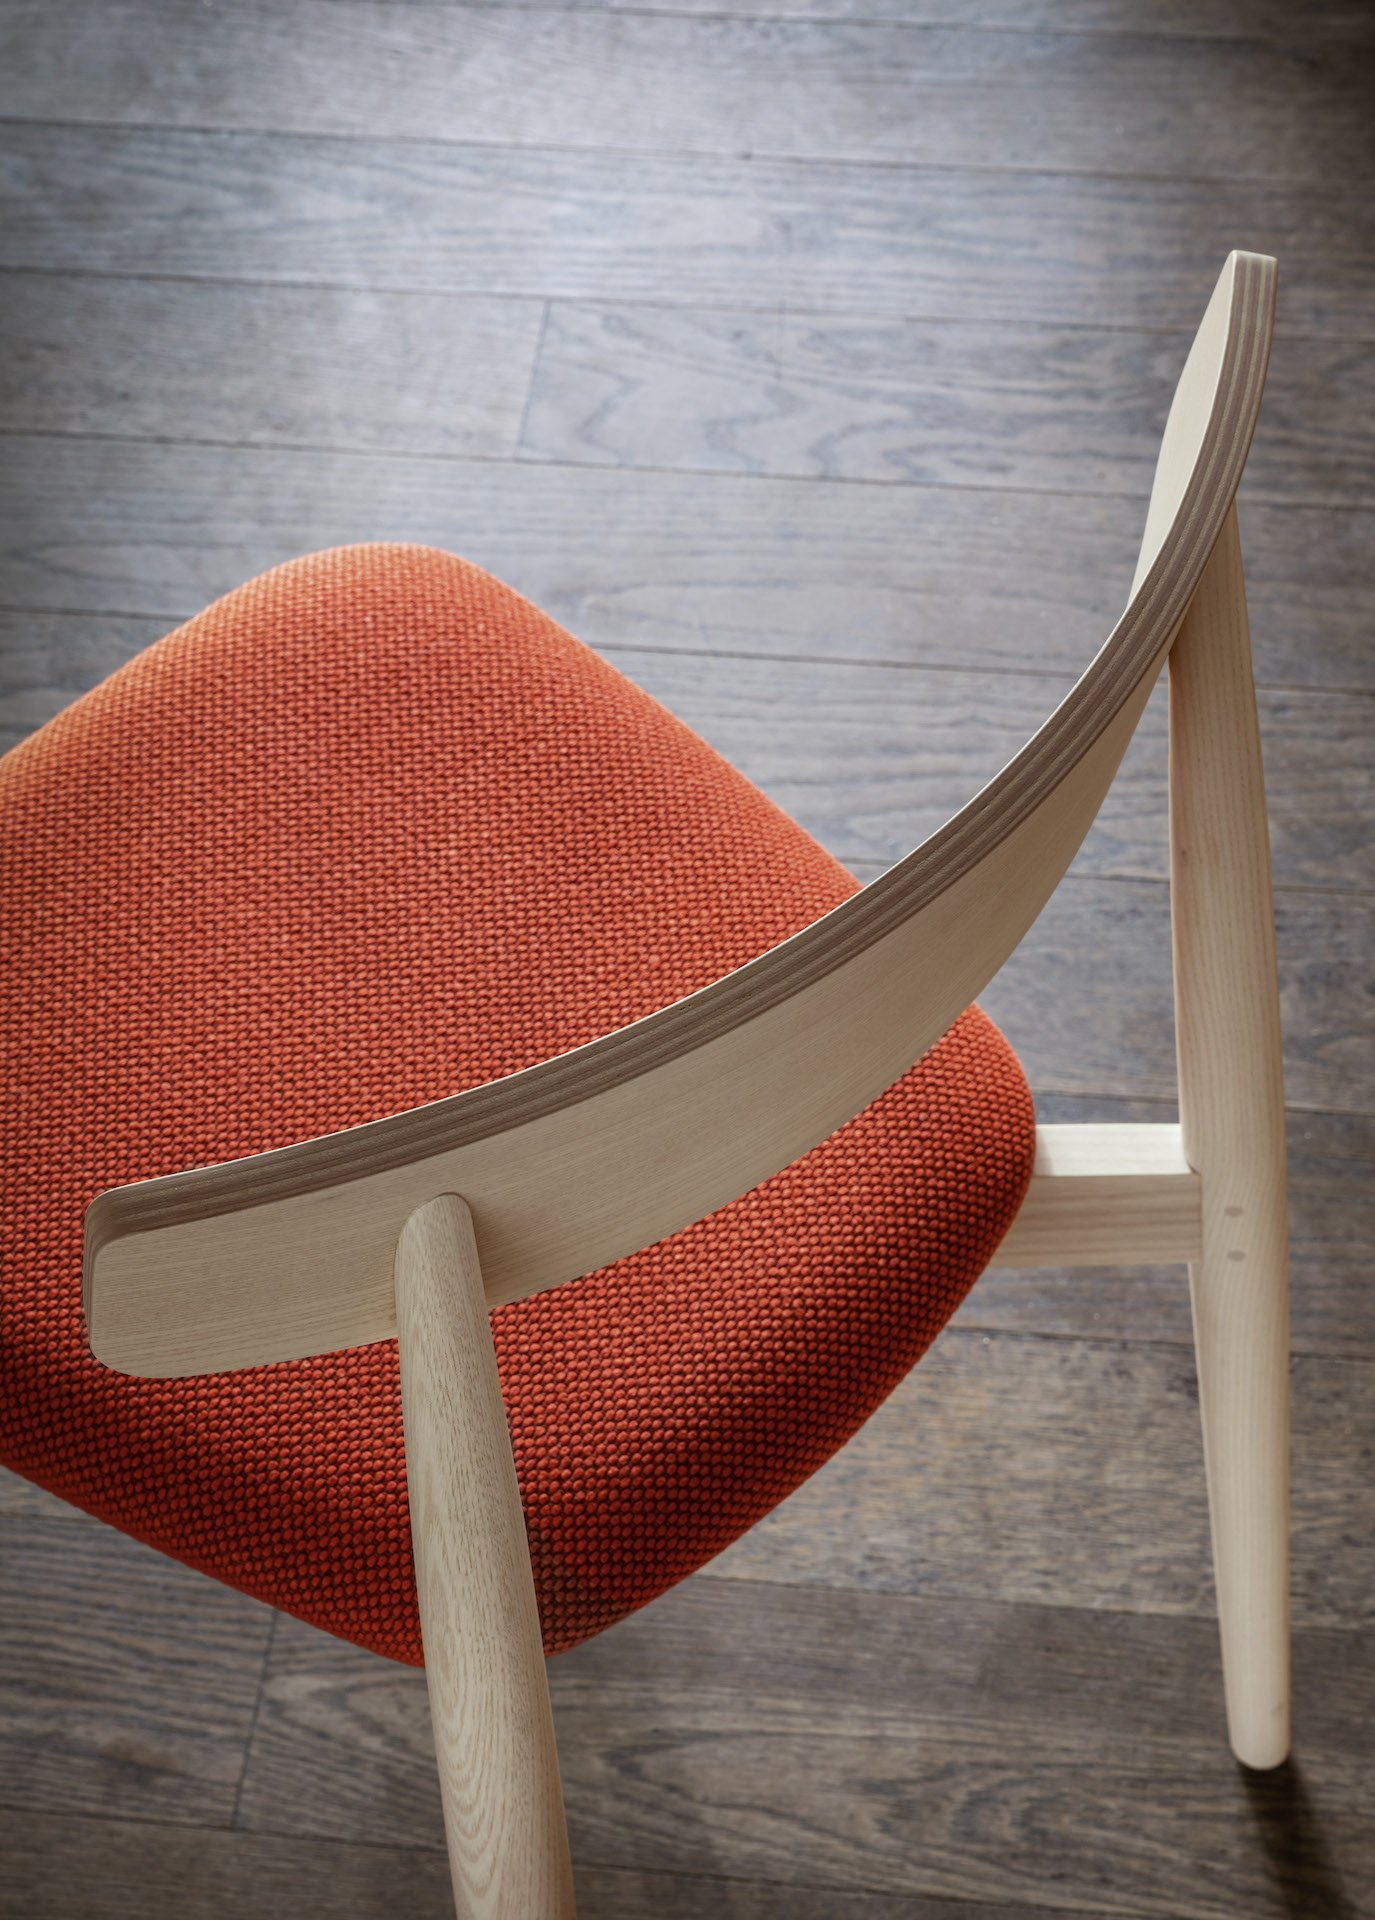 Claretta Wooden Chair from Miniforms, designed by Florian Schmid